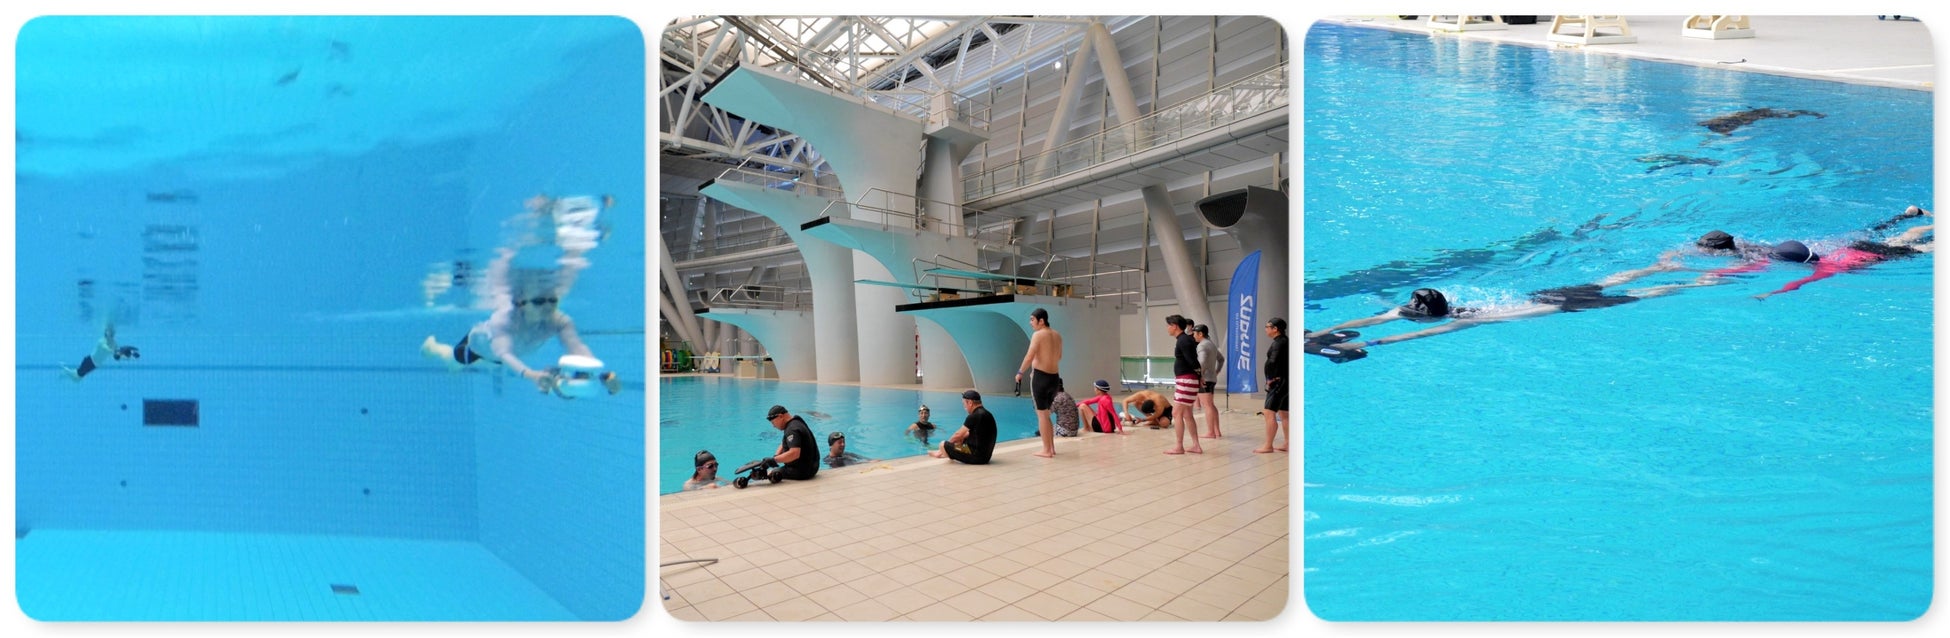 簡単操作で自由に泳げる水中スクーターで新しいアクアフィットネスを体感する無料体験会を7月13日（水）に横浜国際プールで開催のサブ画像3_※実際の内容と異なる場合があります。